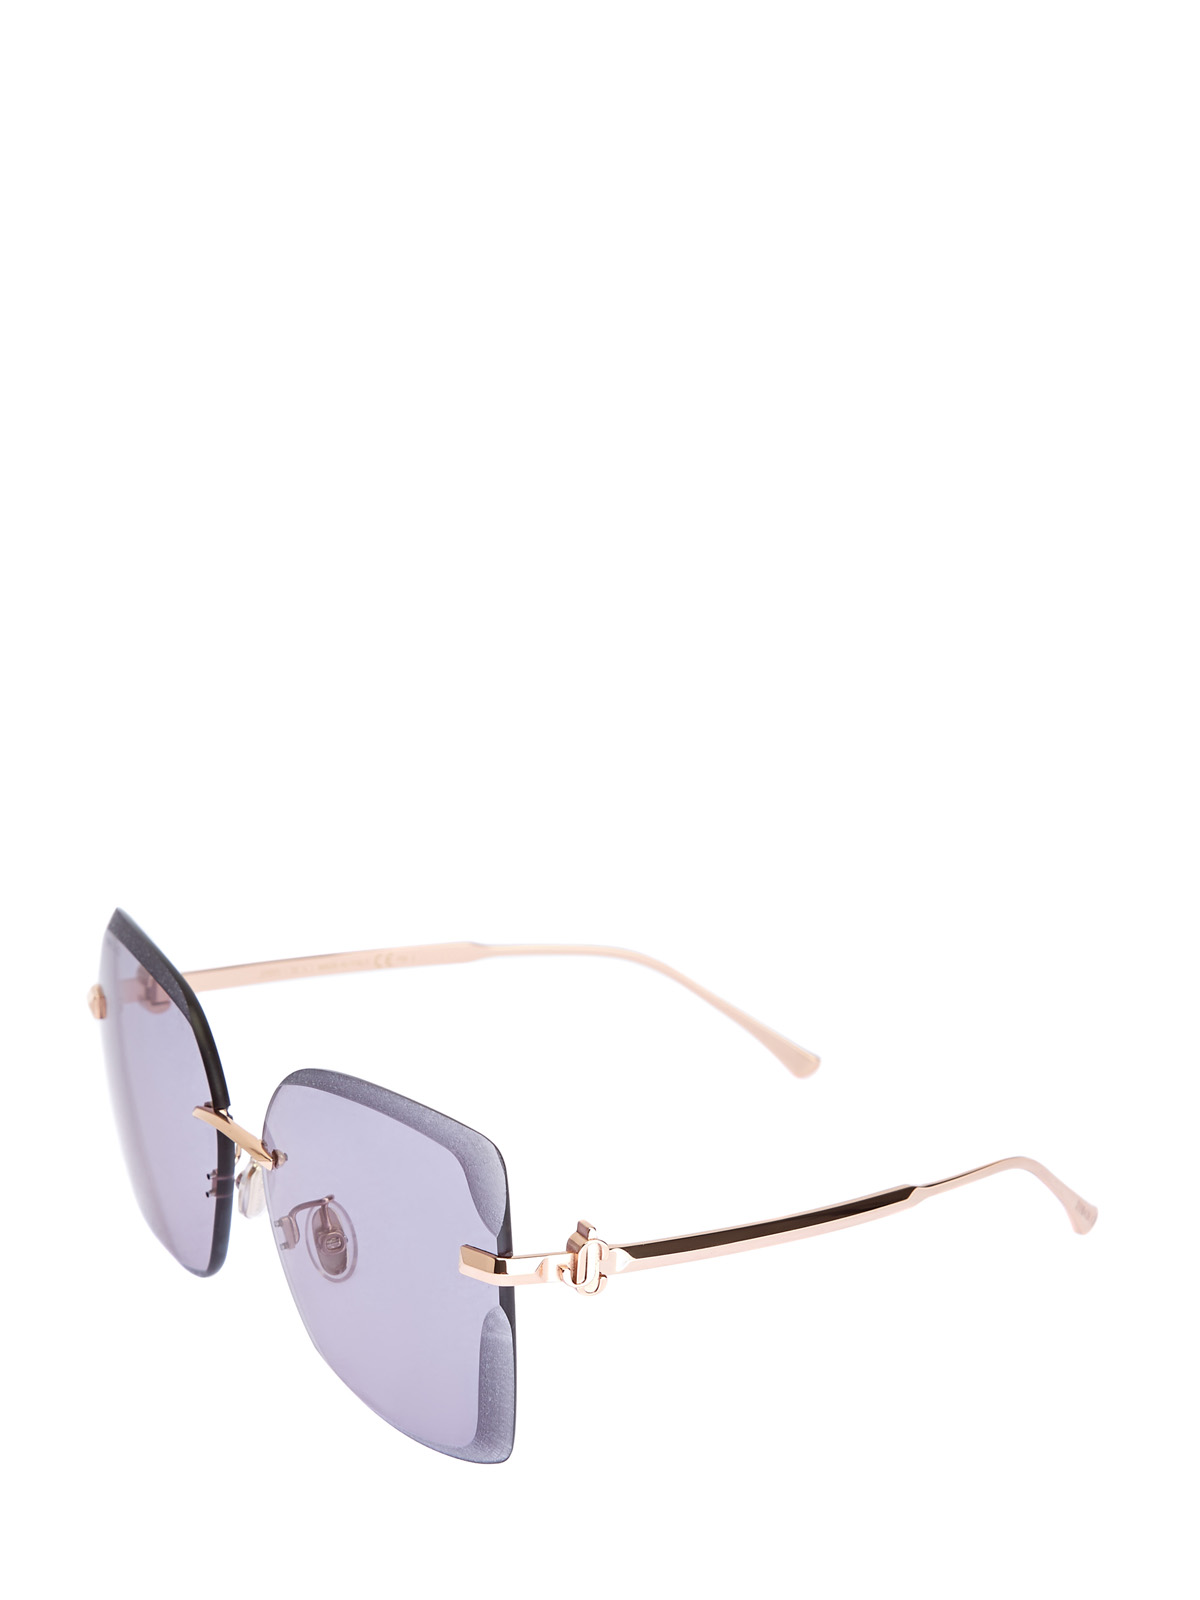 Металлические очки Corin с графическими линзами JIMMY CHOO  (sunglasses), цвет серый, размер 40 - фото 2